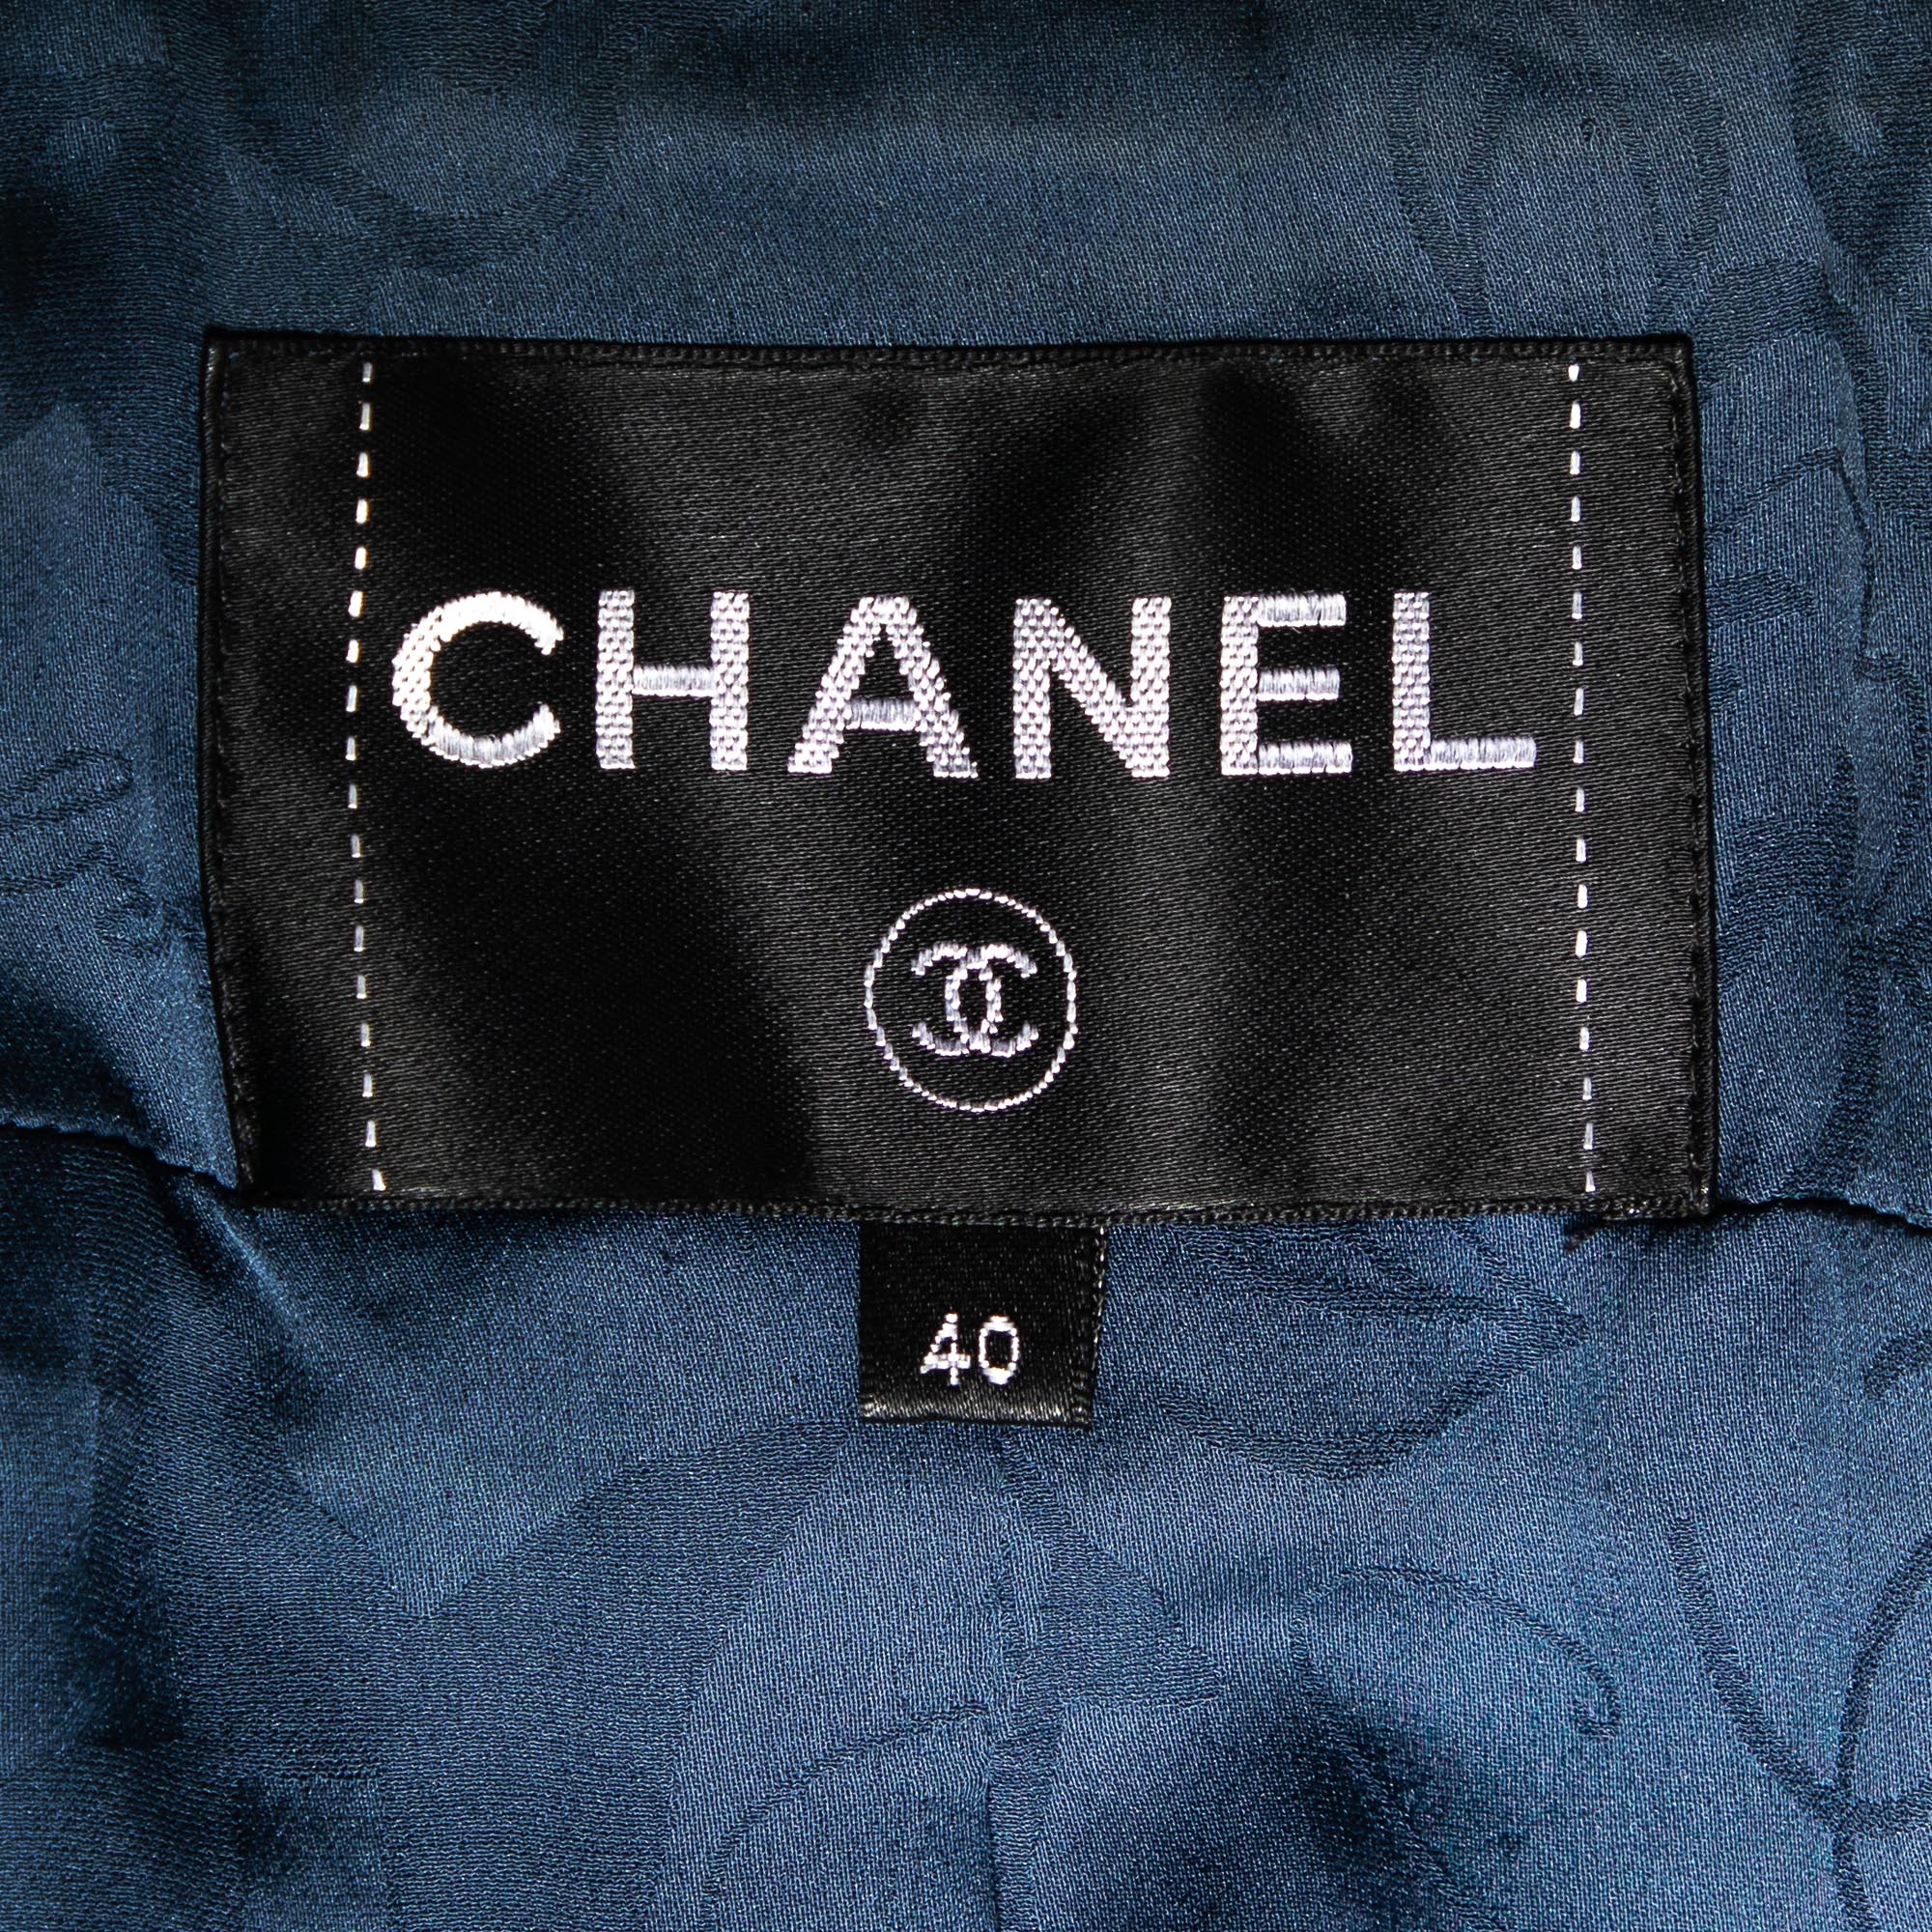 Chanel Multicolor Tweed Button Front Blazer M